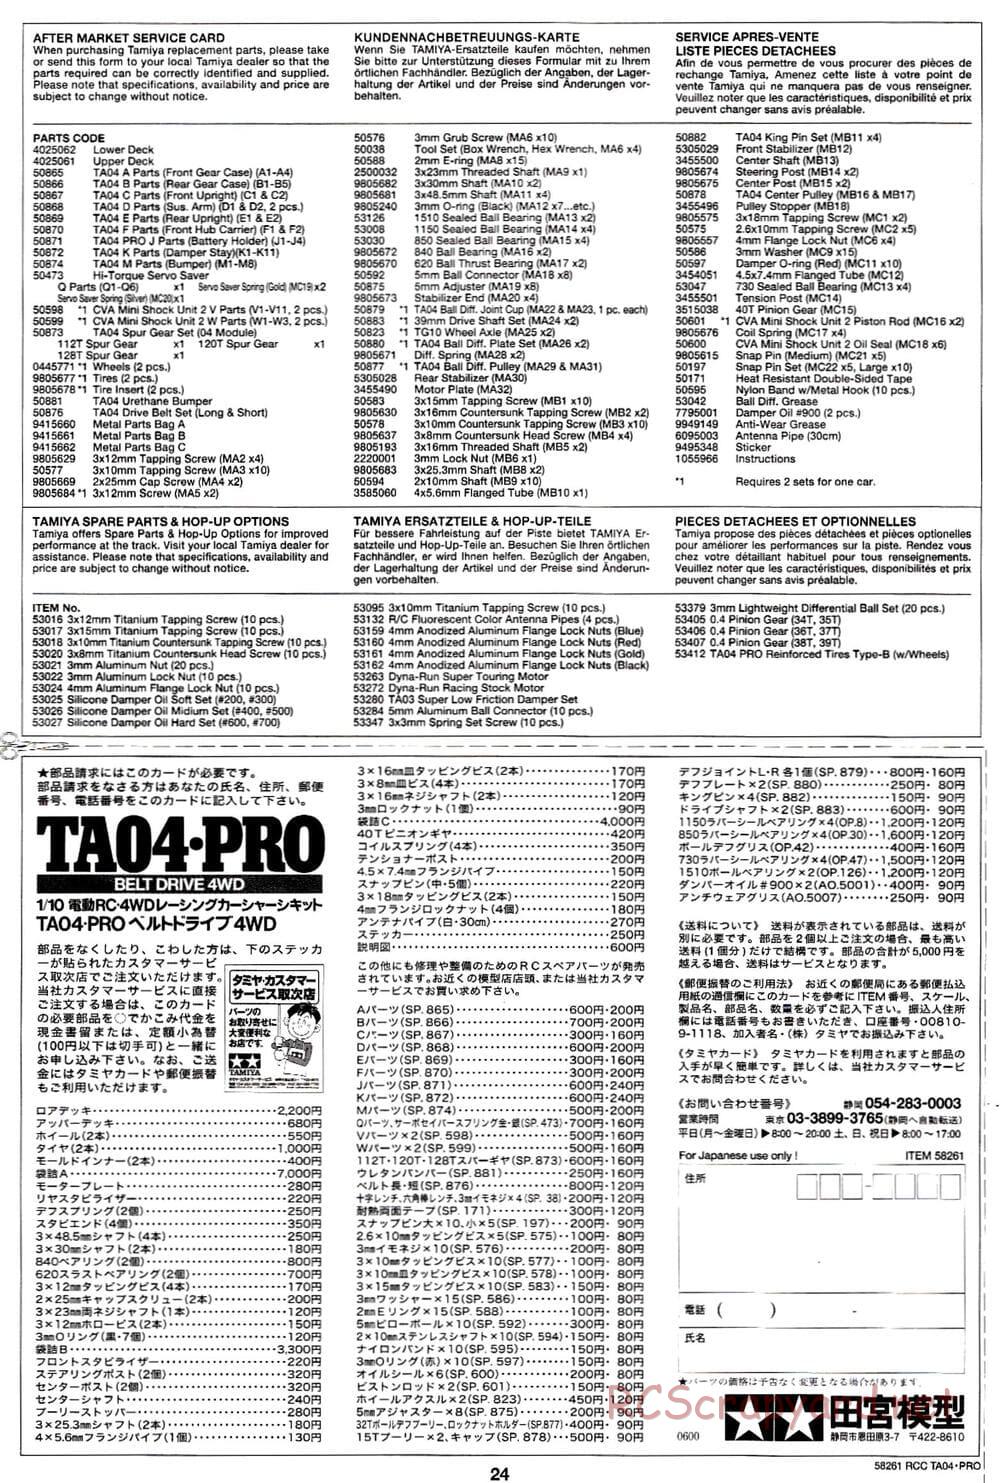 Tamiya - TA-04 Pro Chassis - Manual - Page 24